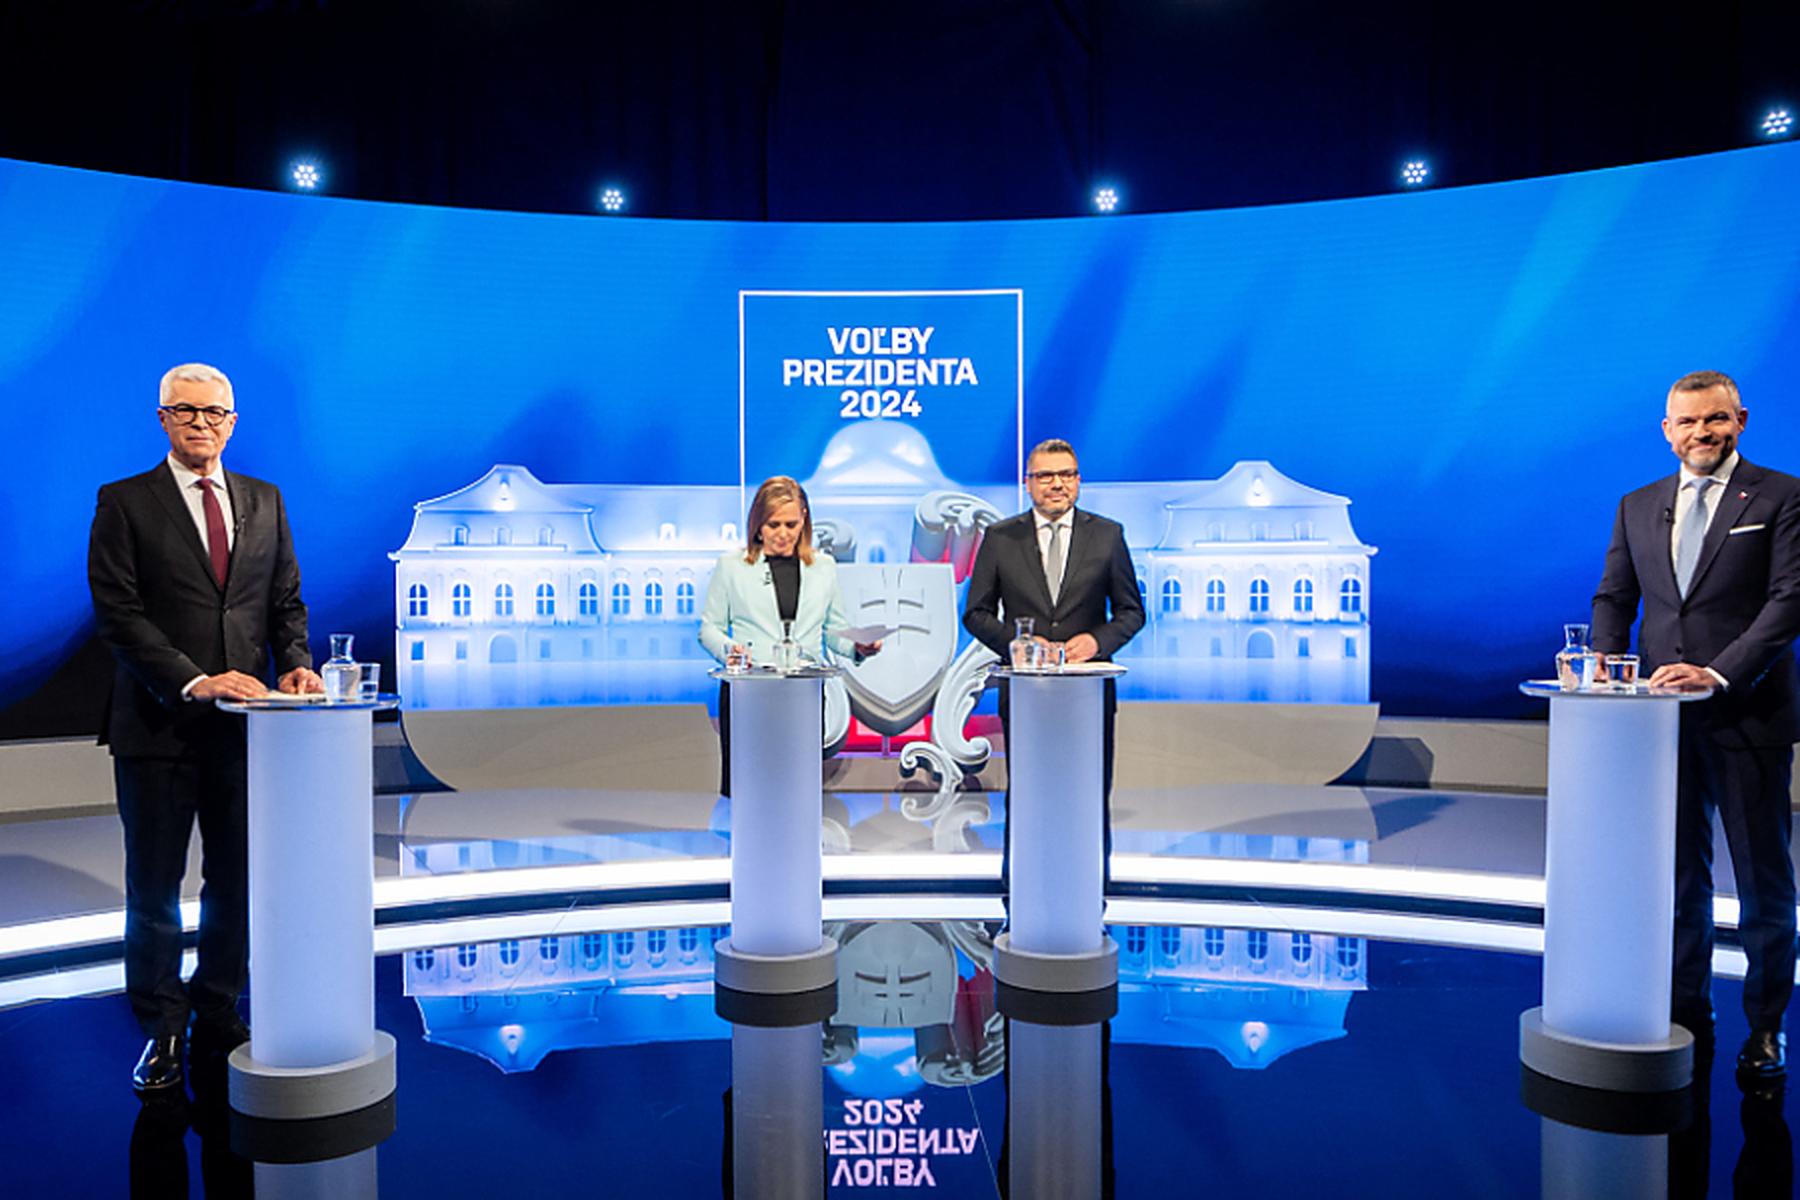 Bratislava: Stichwahl um das Präsidentenamt in der Slowakei beendet